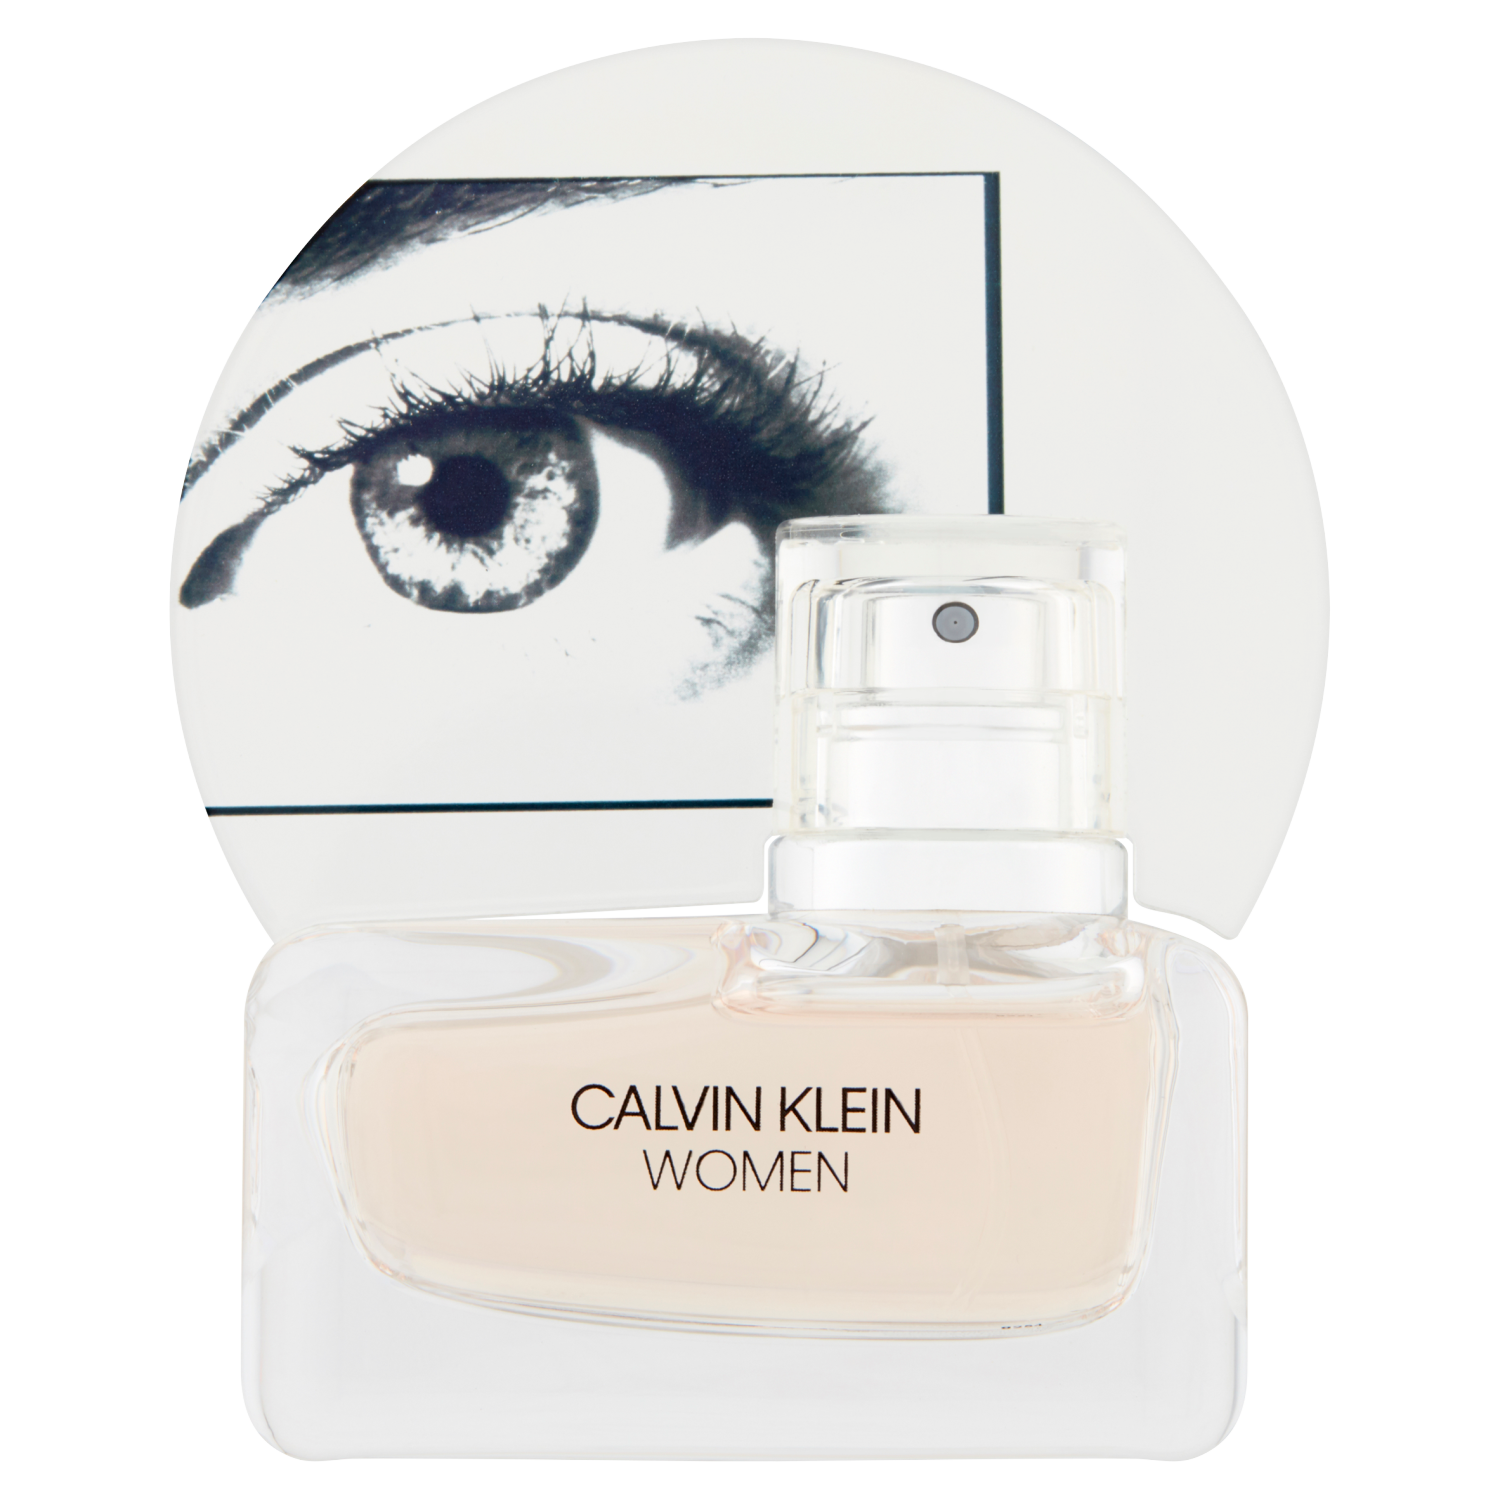 Женская парфюмерная вода Calvin Klein Women, 30 мл парфюмерная вода calvin klein women